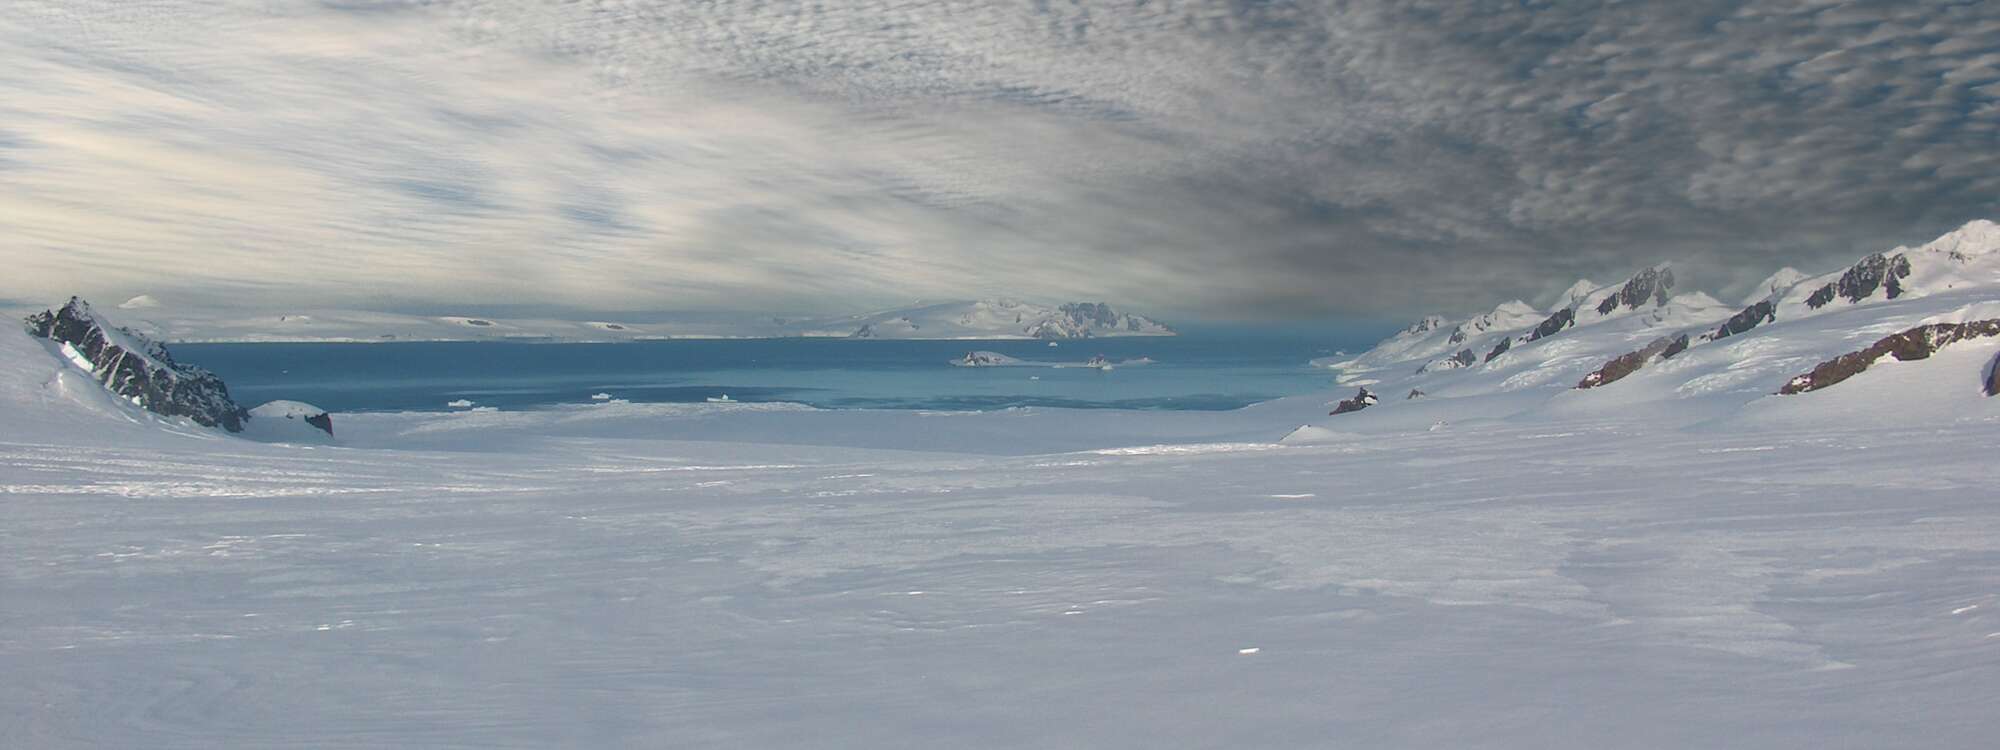 Längsansicht des Huron-Gletschers im Osten der Insel Livingston auf den Südshetlandinseln, mit McFarlane Strait, Half Moon Island und Greenwich Island im Hintergrund in der Antarktis